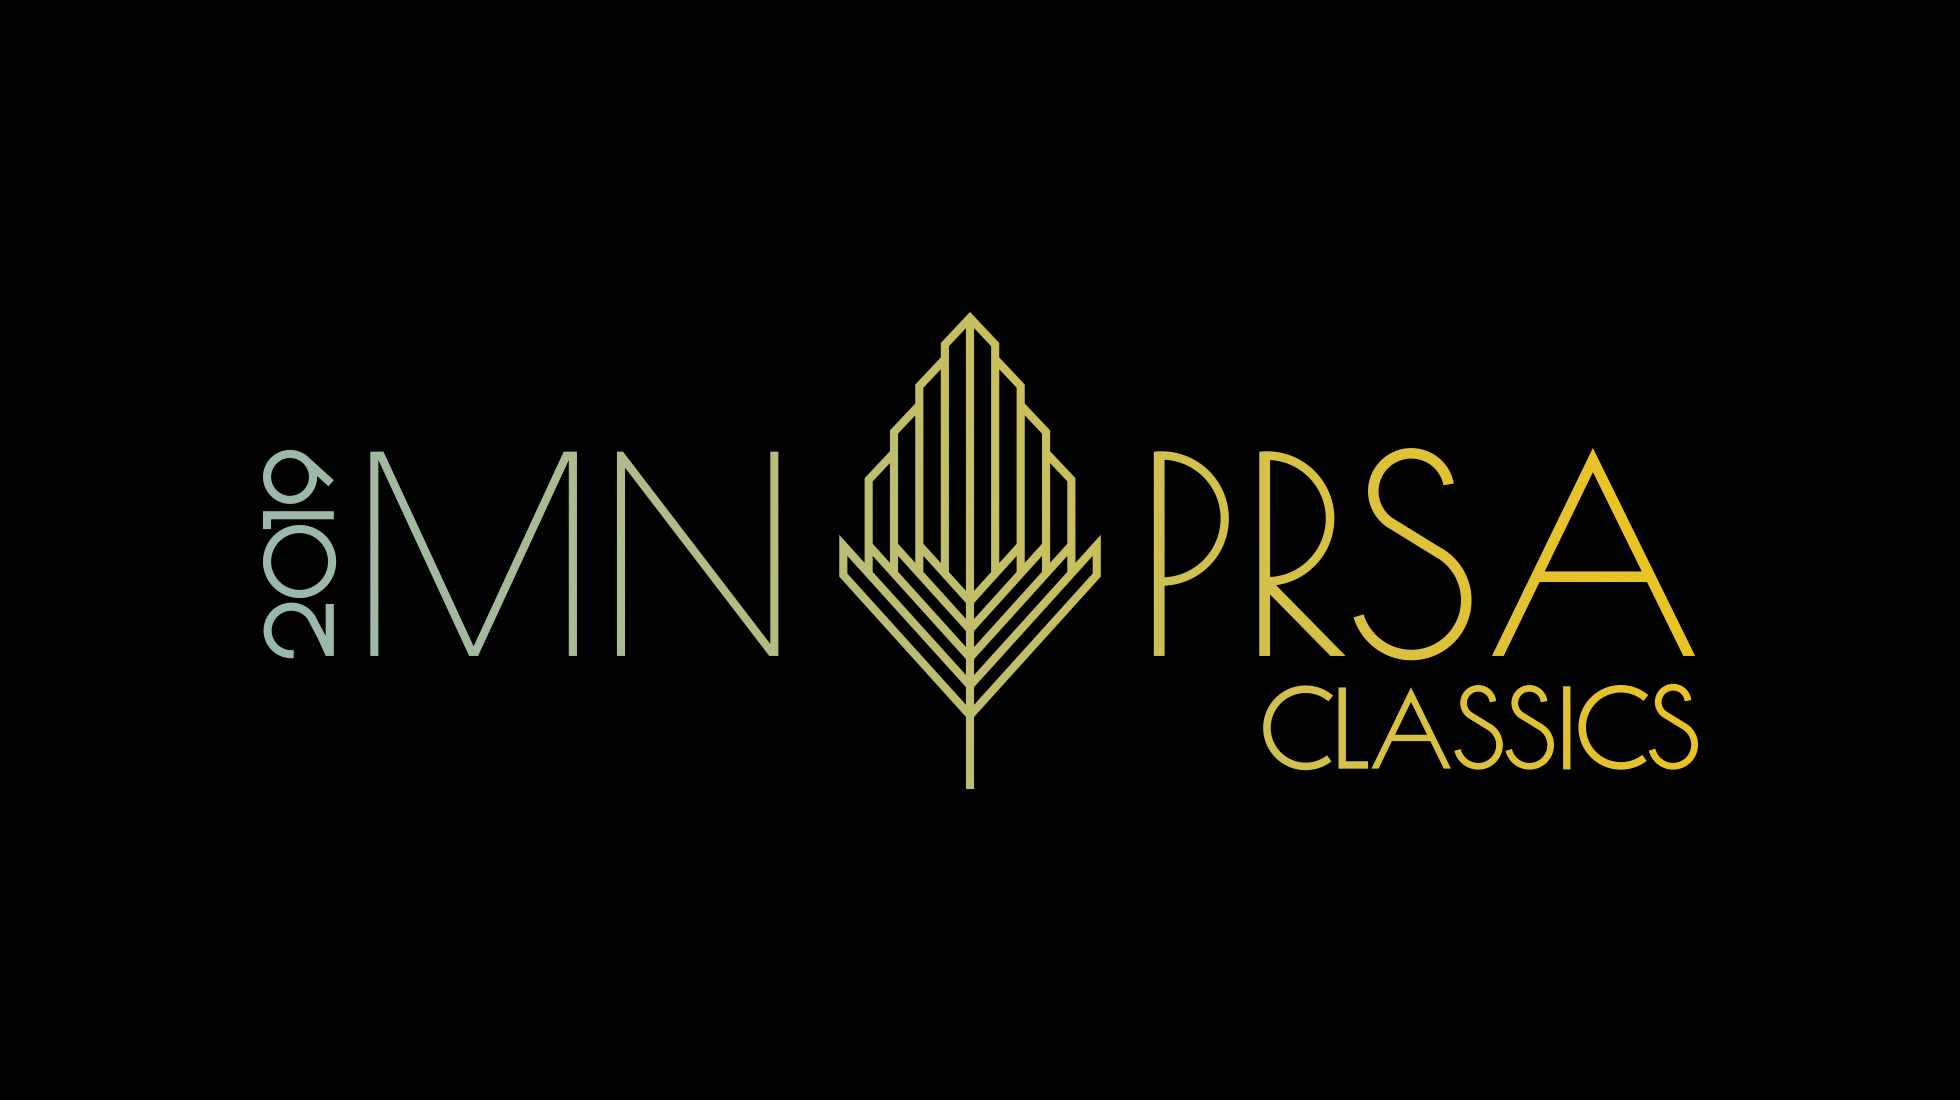 Minnesota PRSA Classics Awards